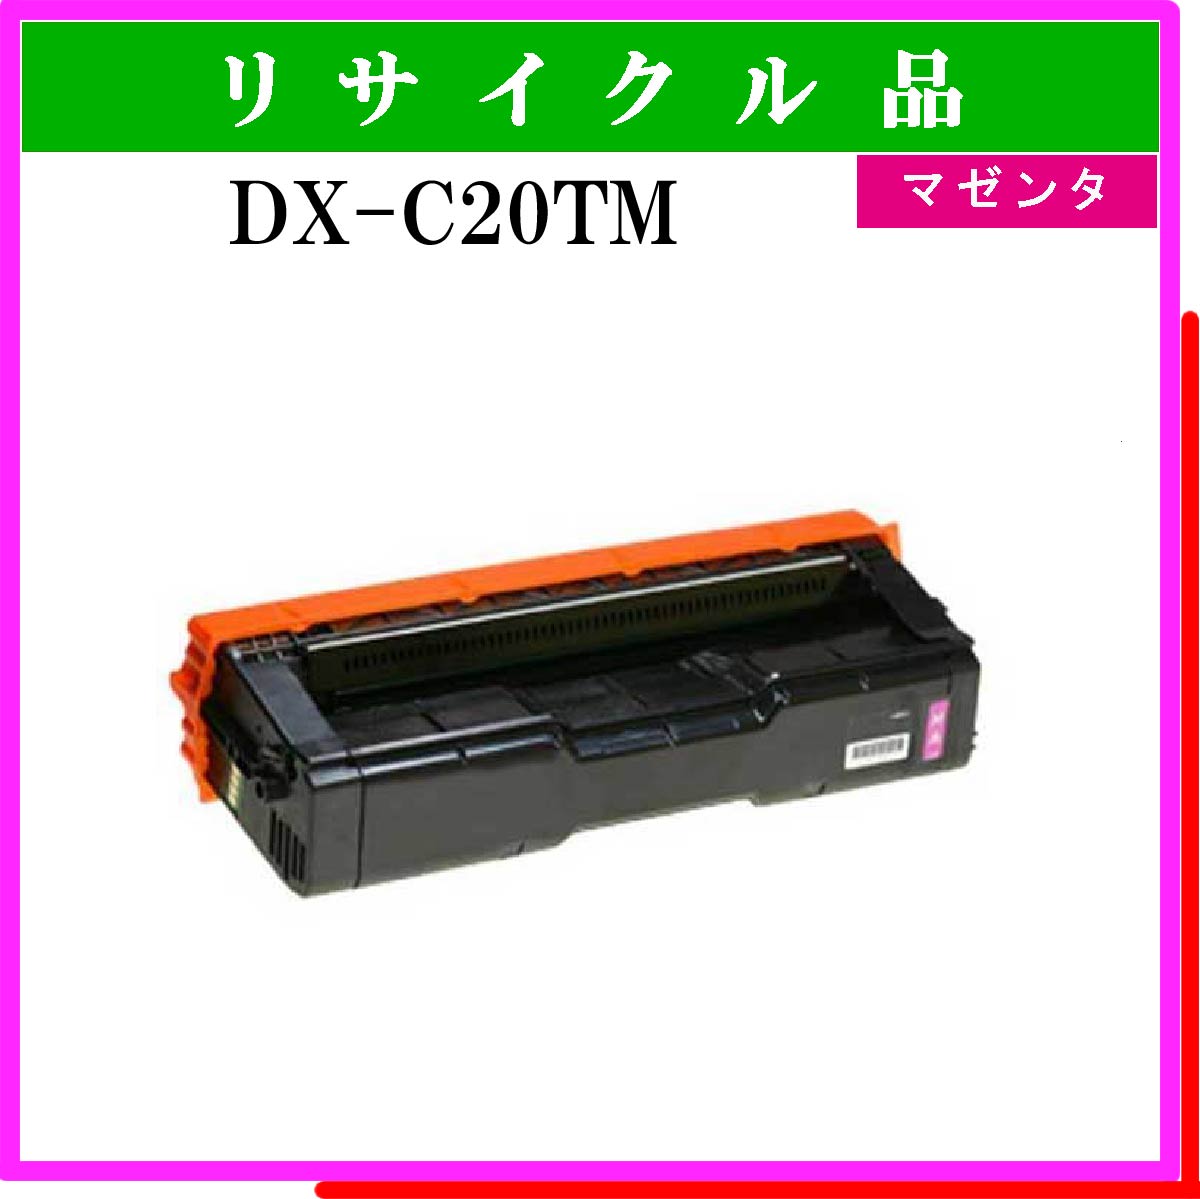 DX-C20TM